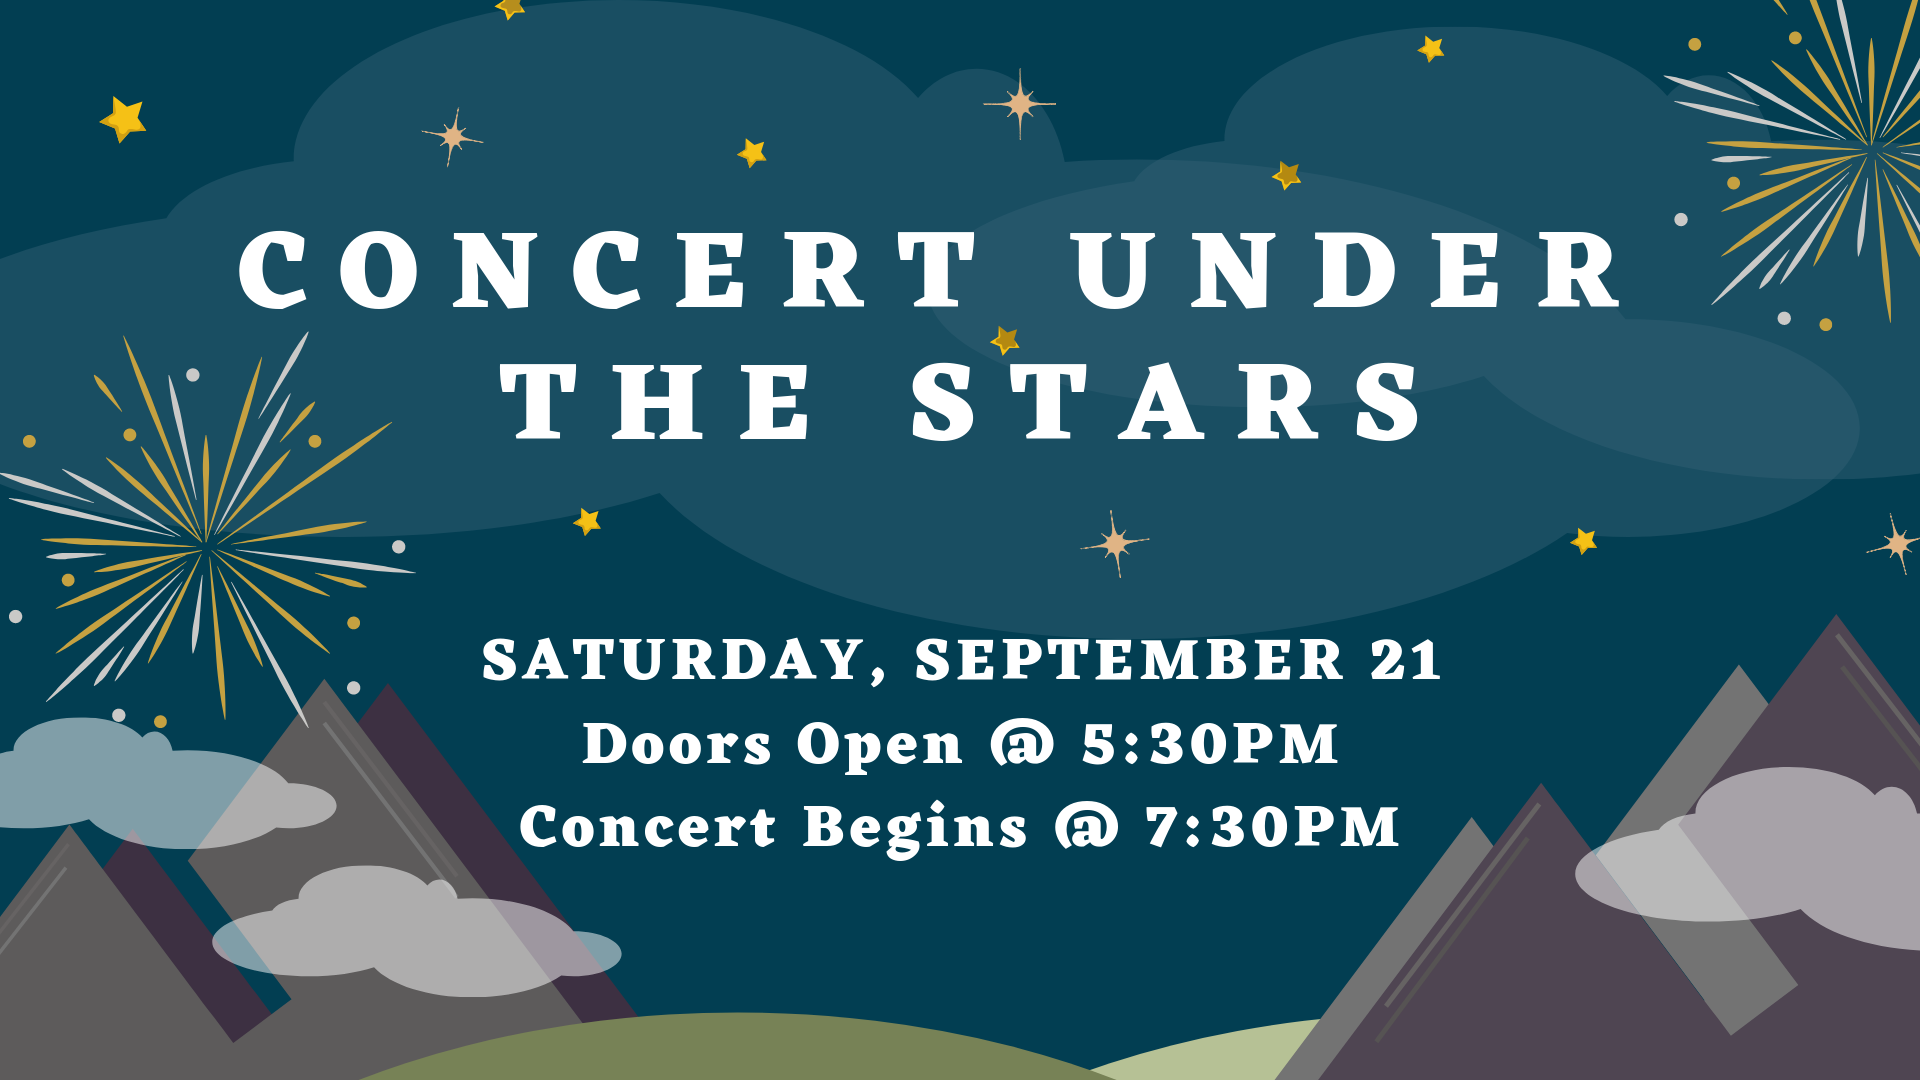 Concert Under the Stars Digital Sign